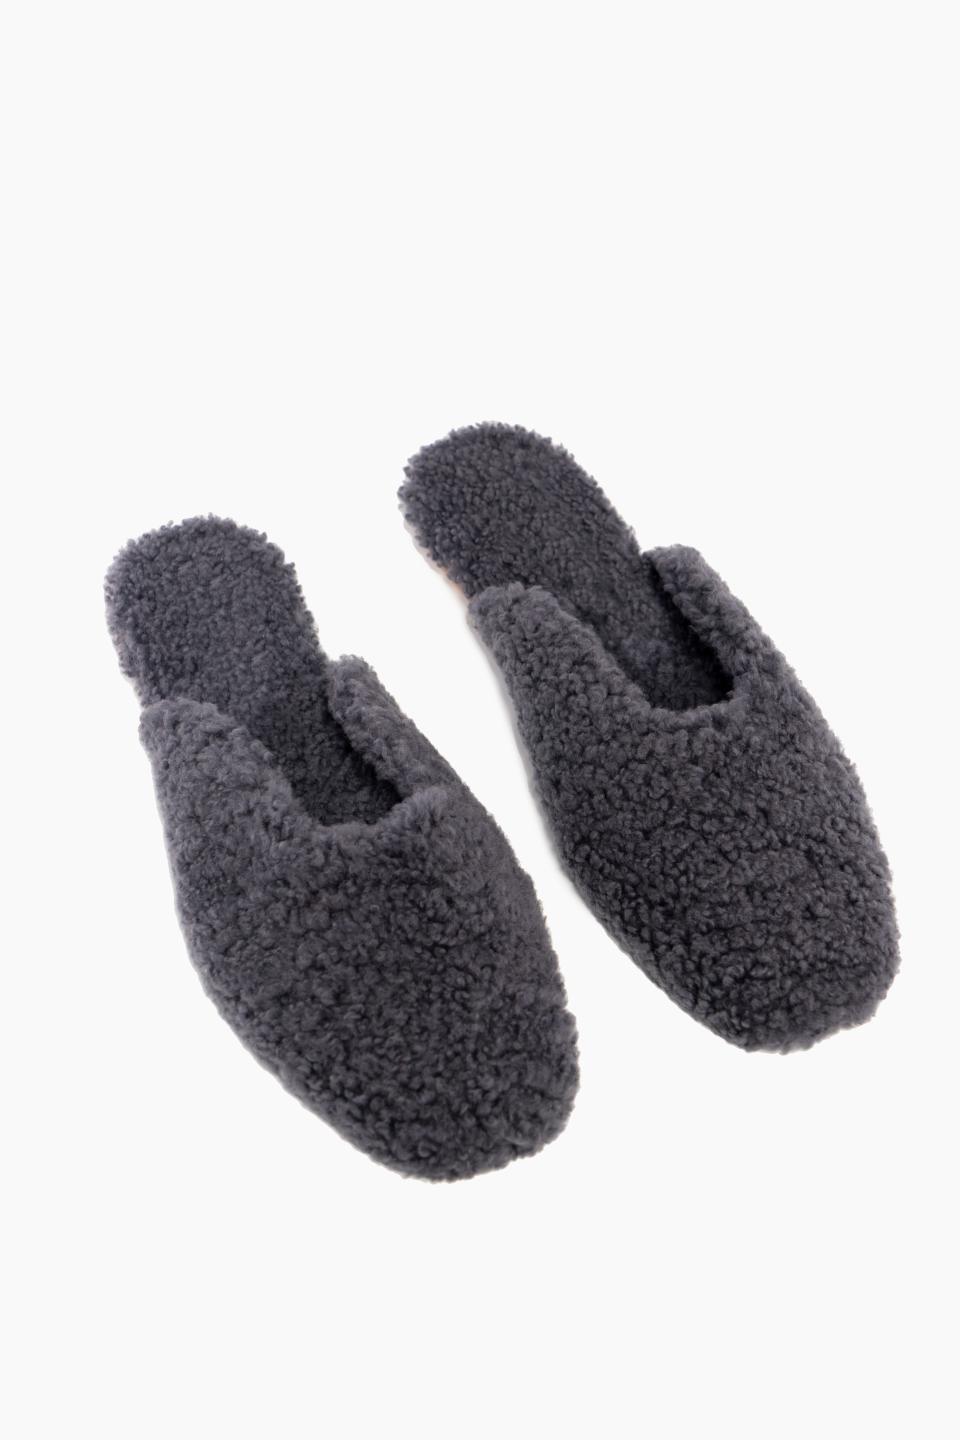 Shearling slippers, £310, Sleeper